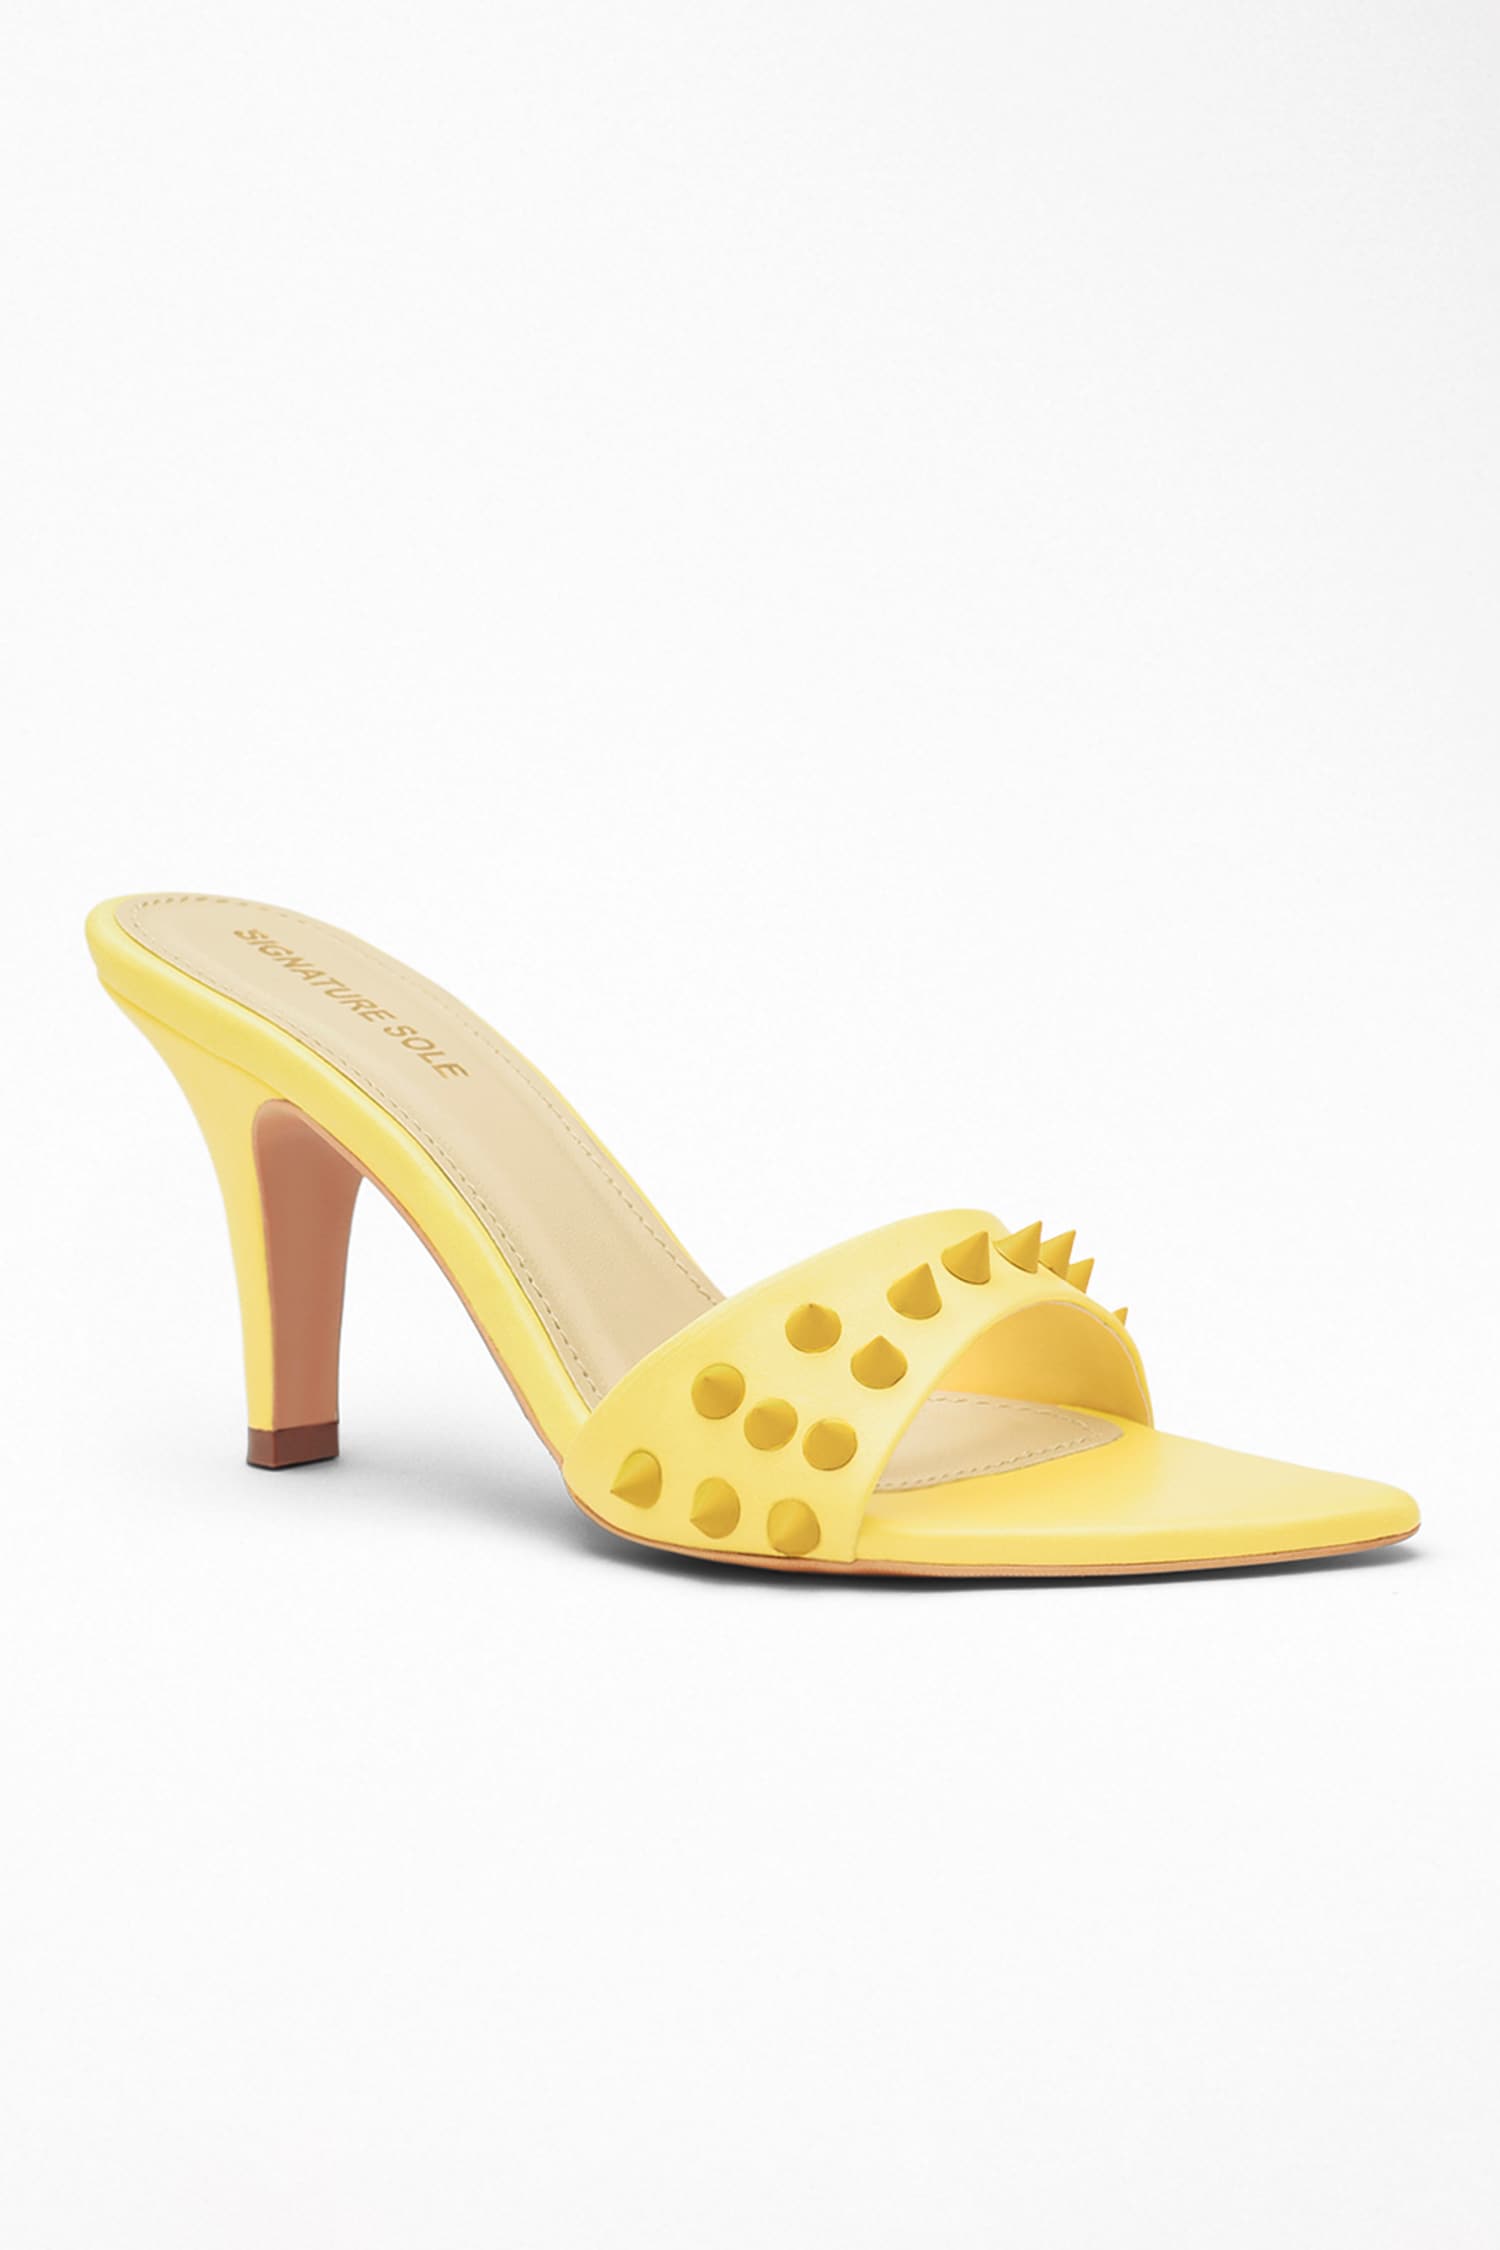 Buy Flat N Heels Women Yellow Woven Design Wedges - Heels for Women  13574750 | Myntra